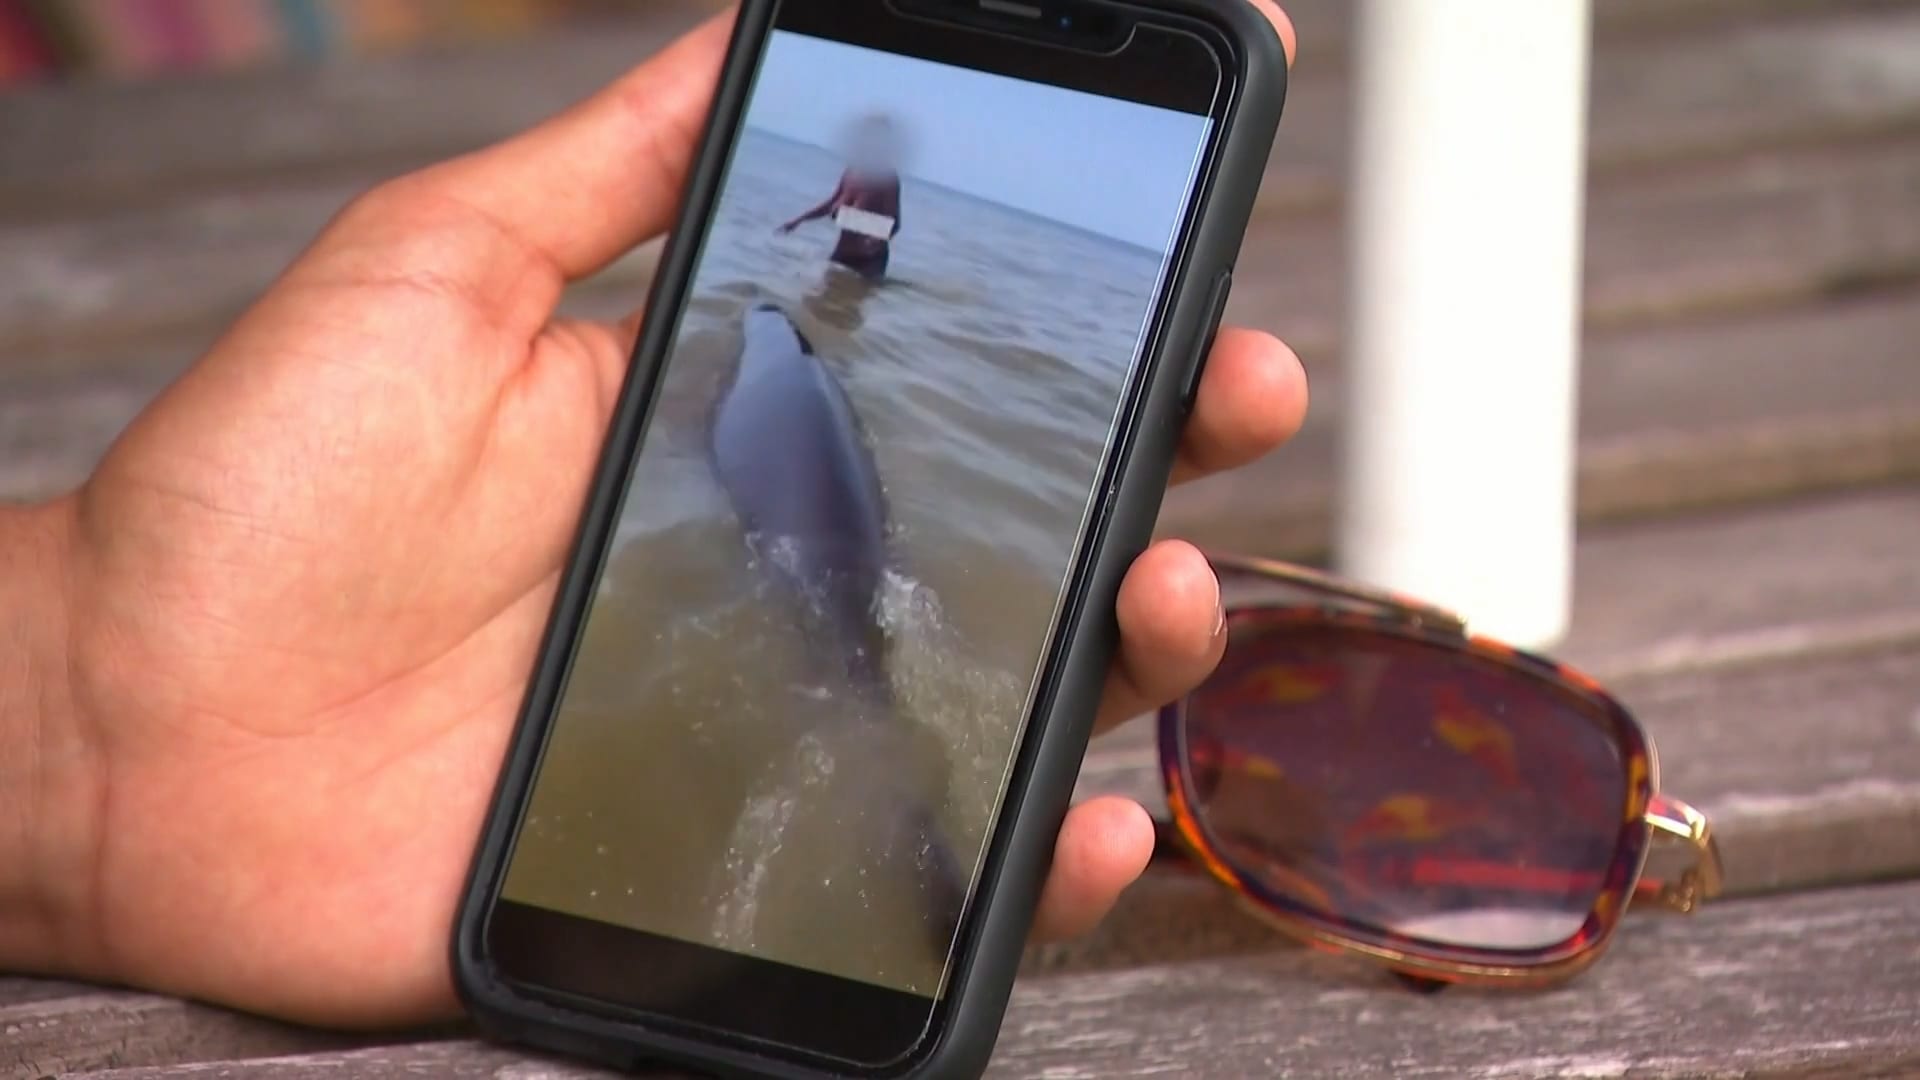 Dani filmde bizarre actie van vrouw die op dolfijn klom: 'Je hoorde gelijk mensen schelden'